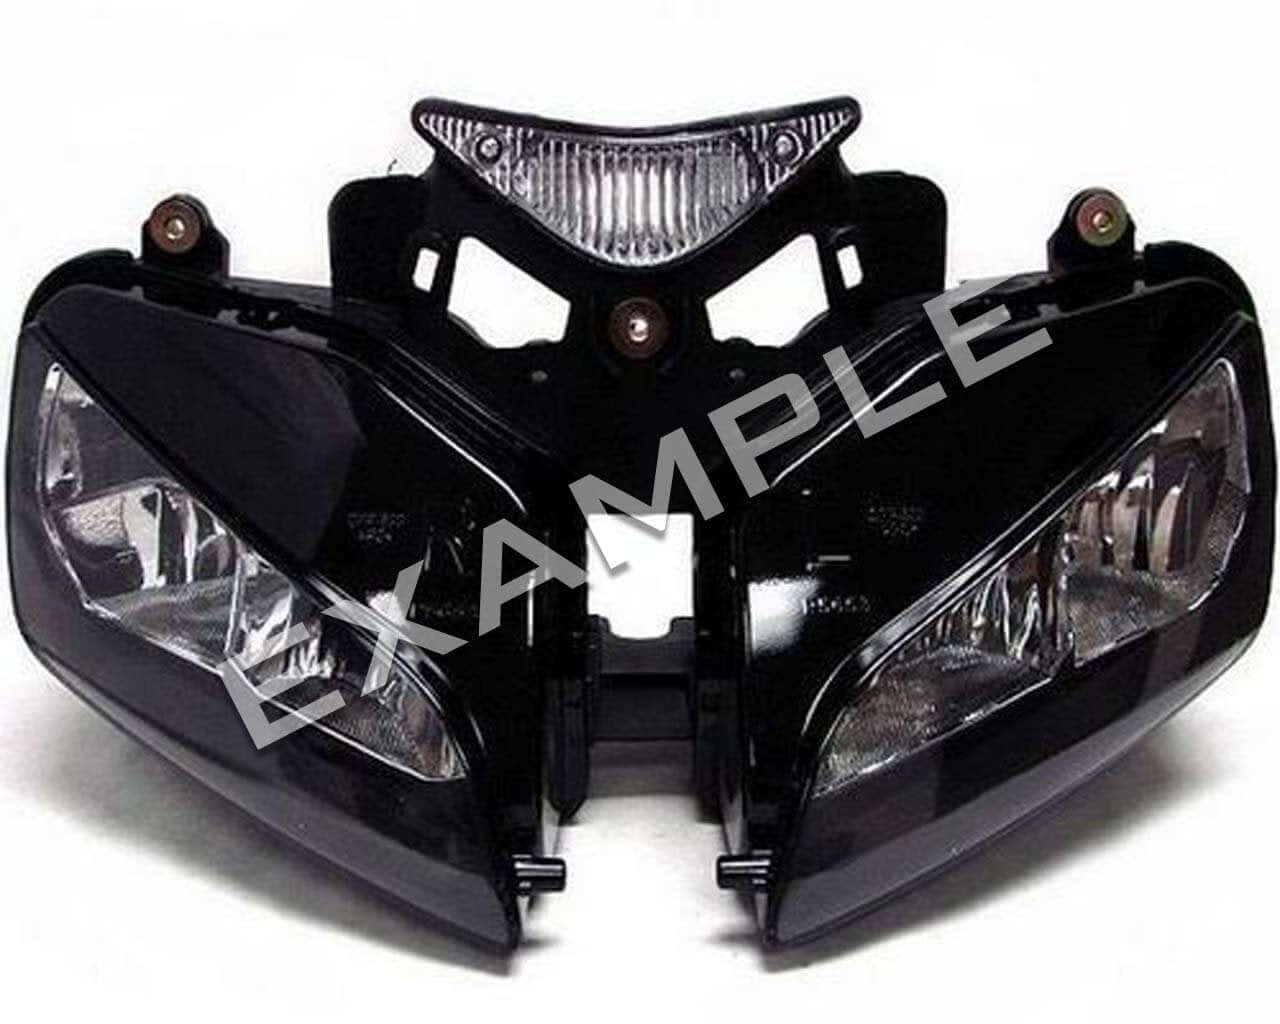 Honda CBR1000RR (03-07) - Bi-LED koplamp verlichting upgrade kit